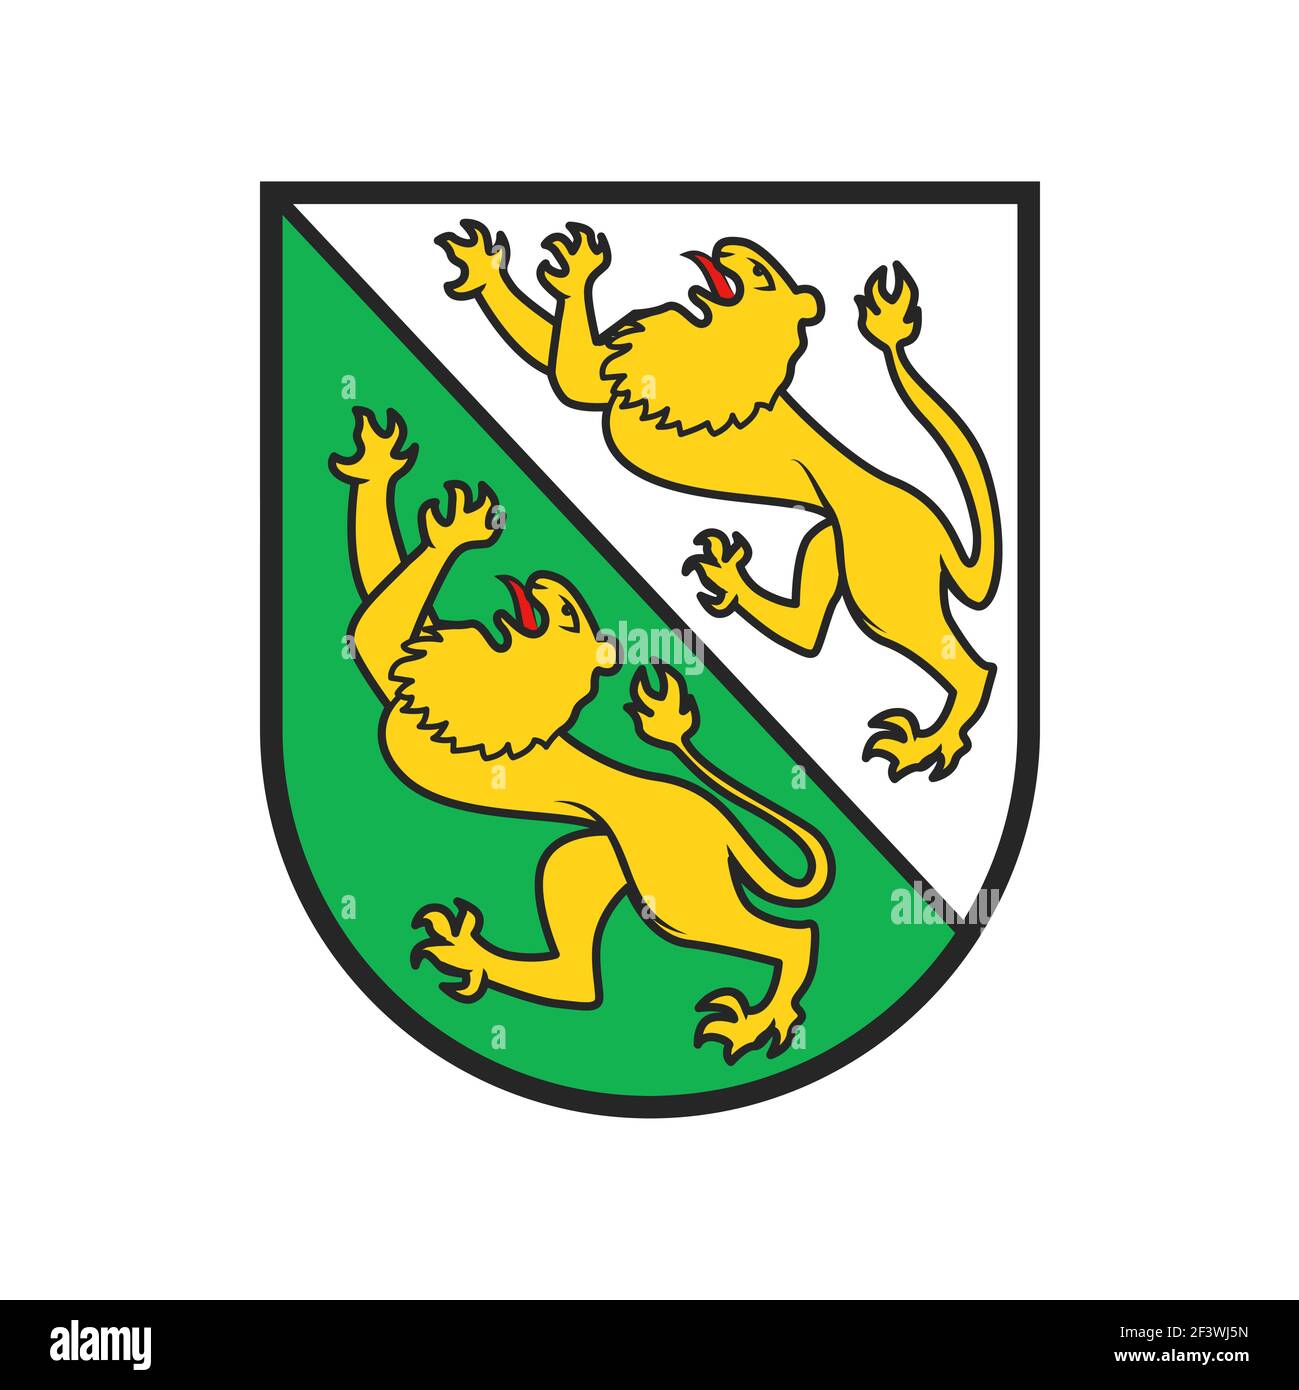 Schweizer Kanton Wappen, Schweiz Thurgau Emblem und heraldry Zeichen, Vektor. Schweizer Kantonsschild der Region Thurgau, Wappen-Flagge, Stock Vektor